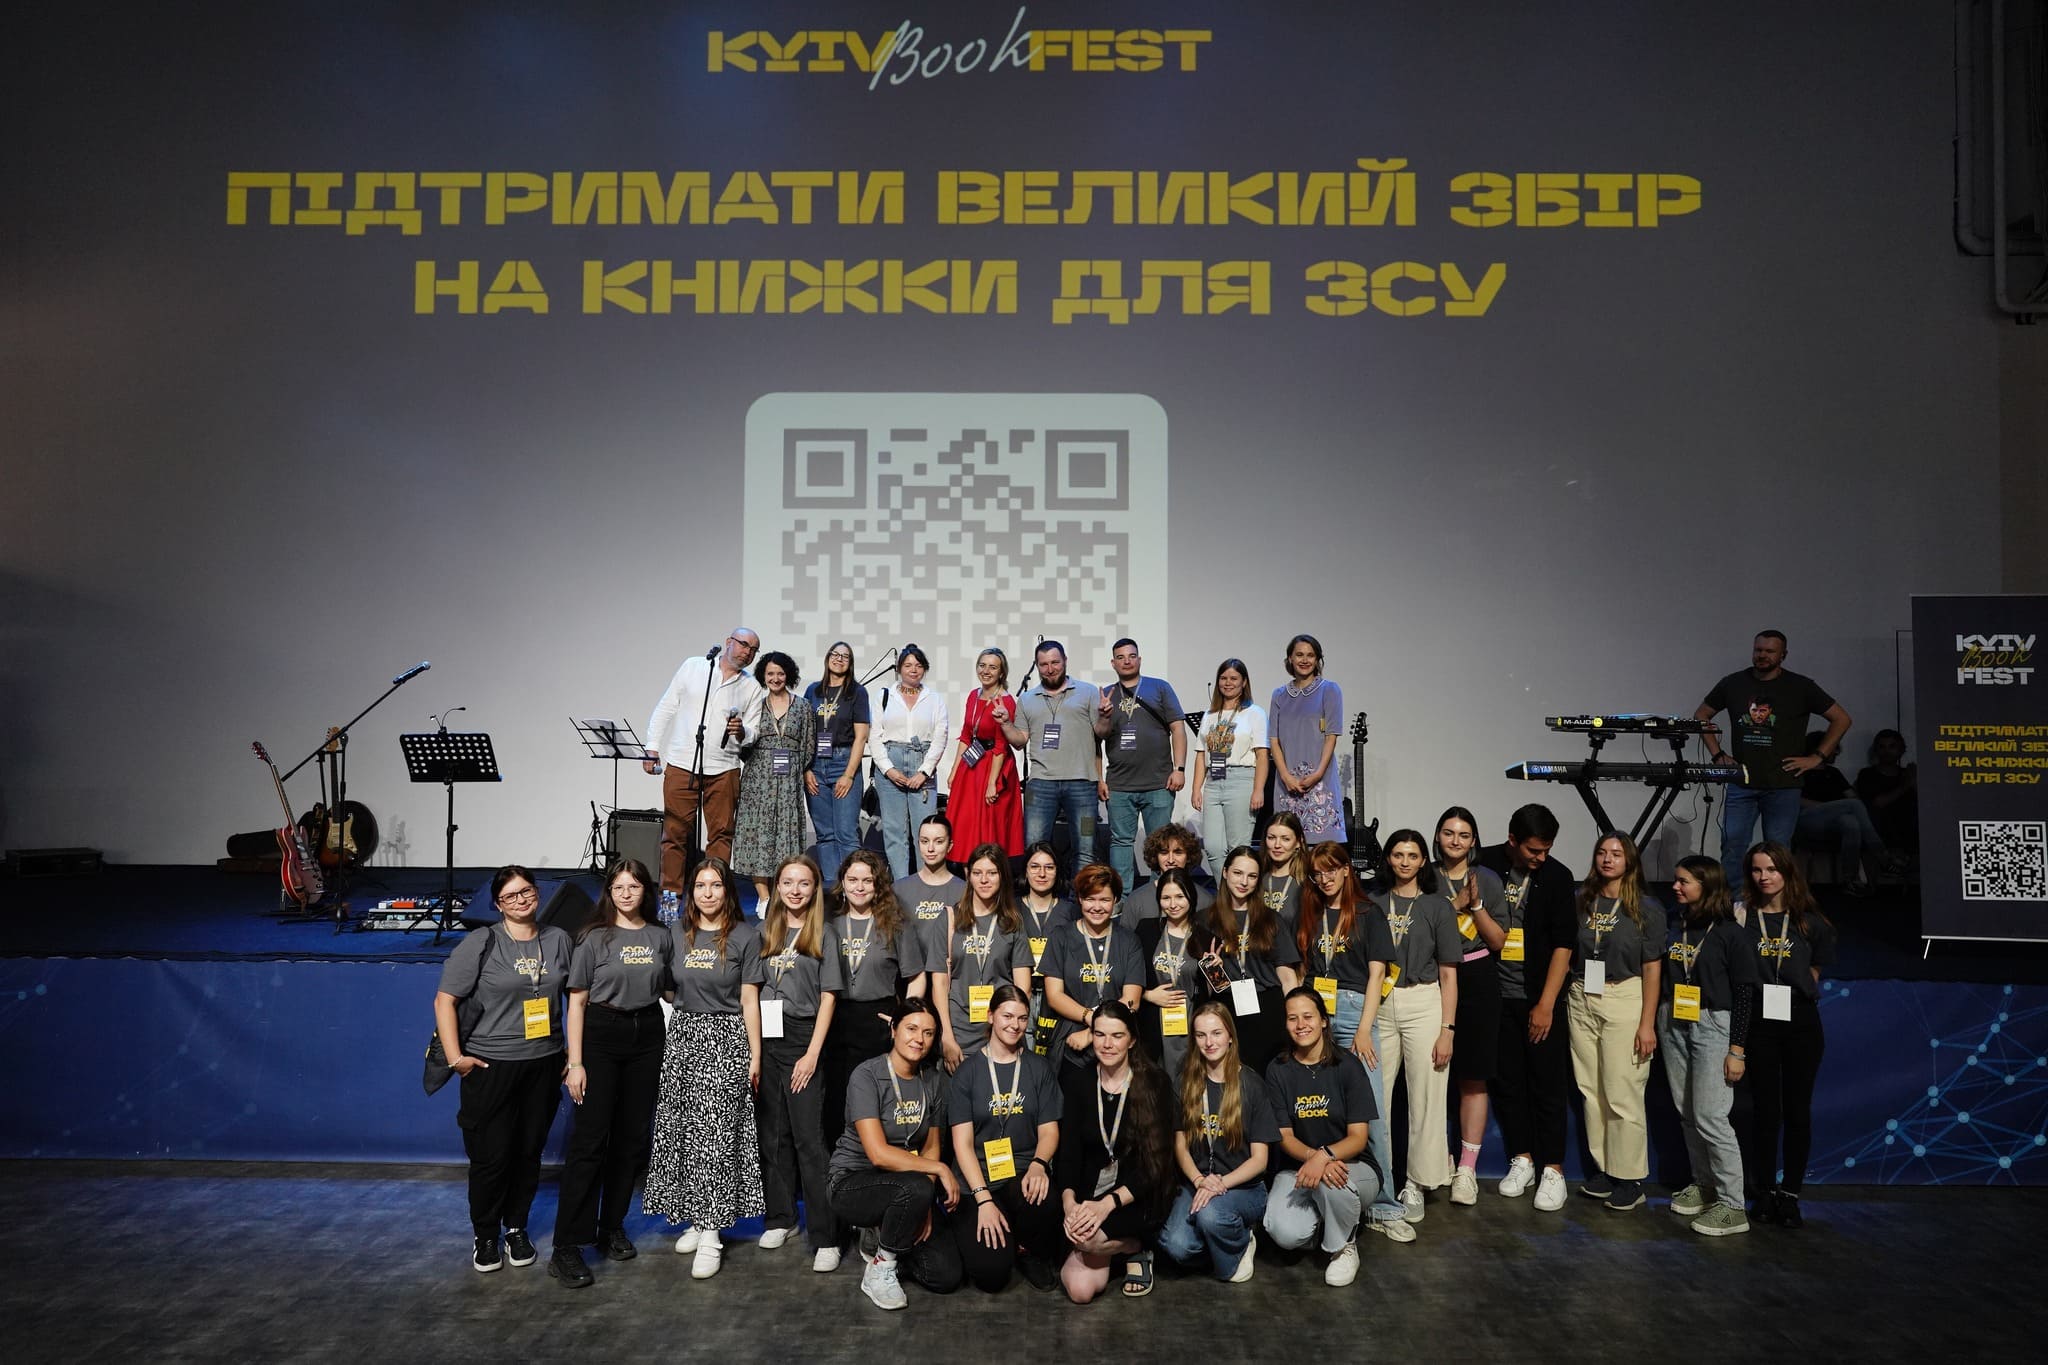 Понад 25 тисяч відвідувачів, 160 подій і 90 учасників: KyivBookFest у цифрах, фактах і відгуках